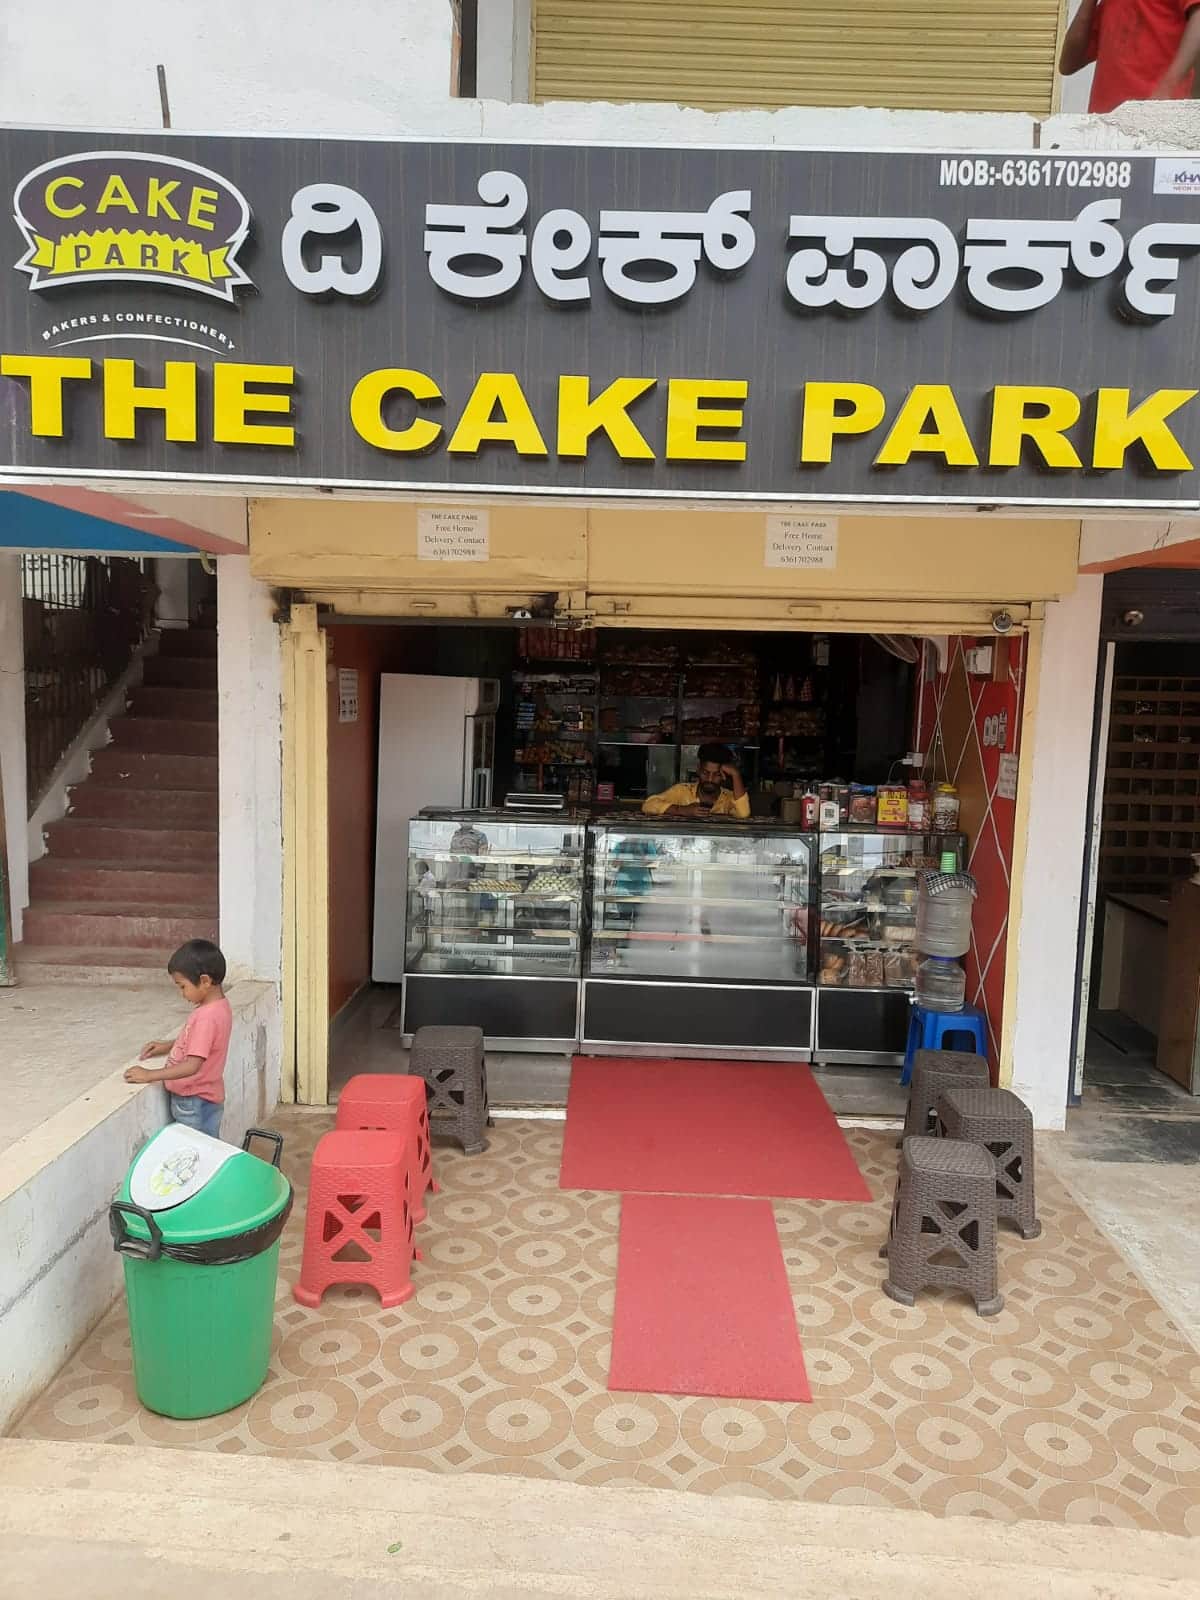 Cake Park, Besant Nagar order online - Zomato